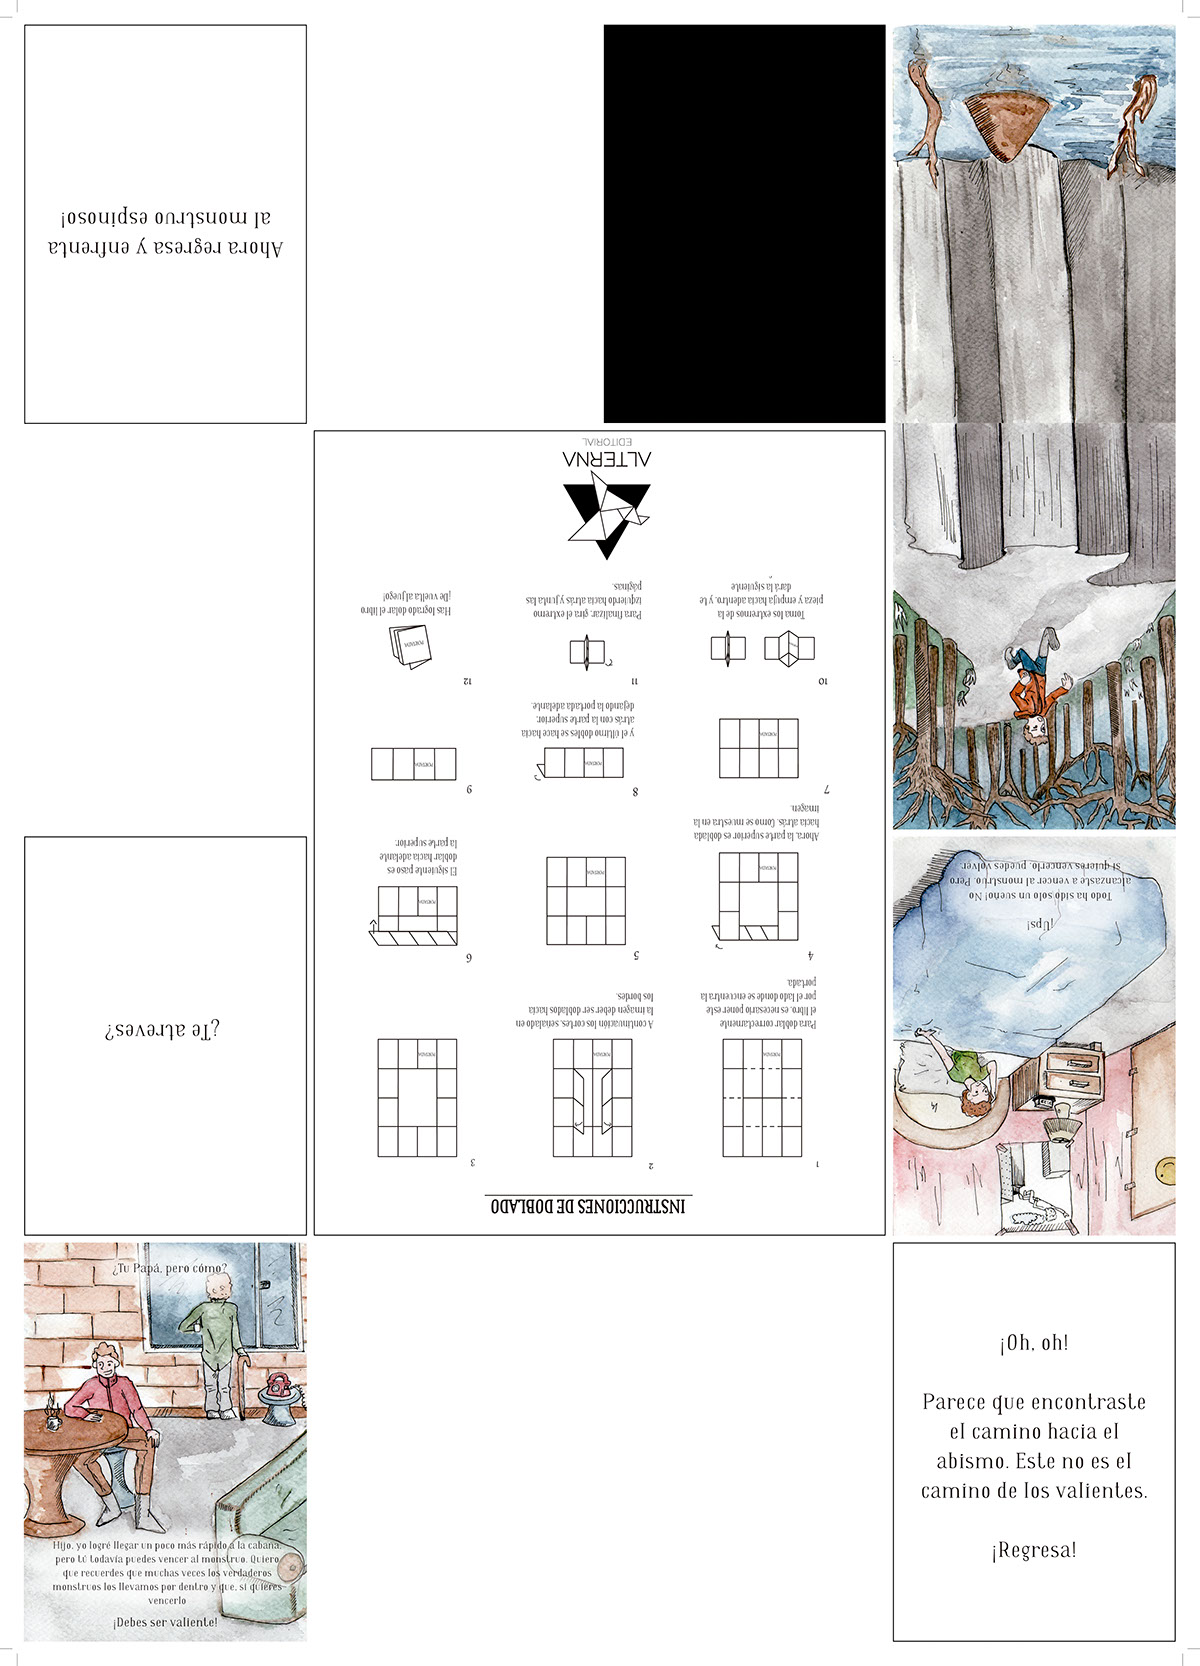 diseño estudio 2 Andes libr Plegable fanzine Monstruo espinoso terro niños